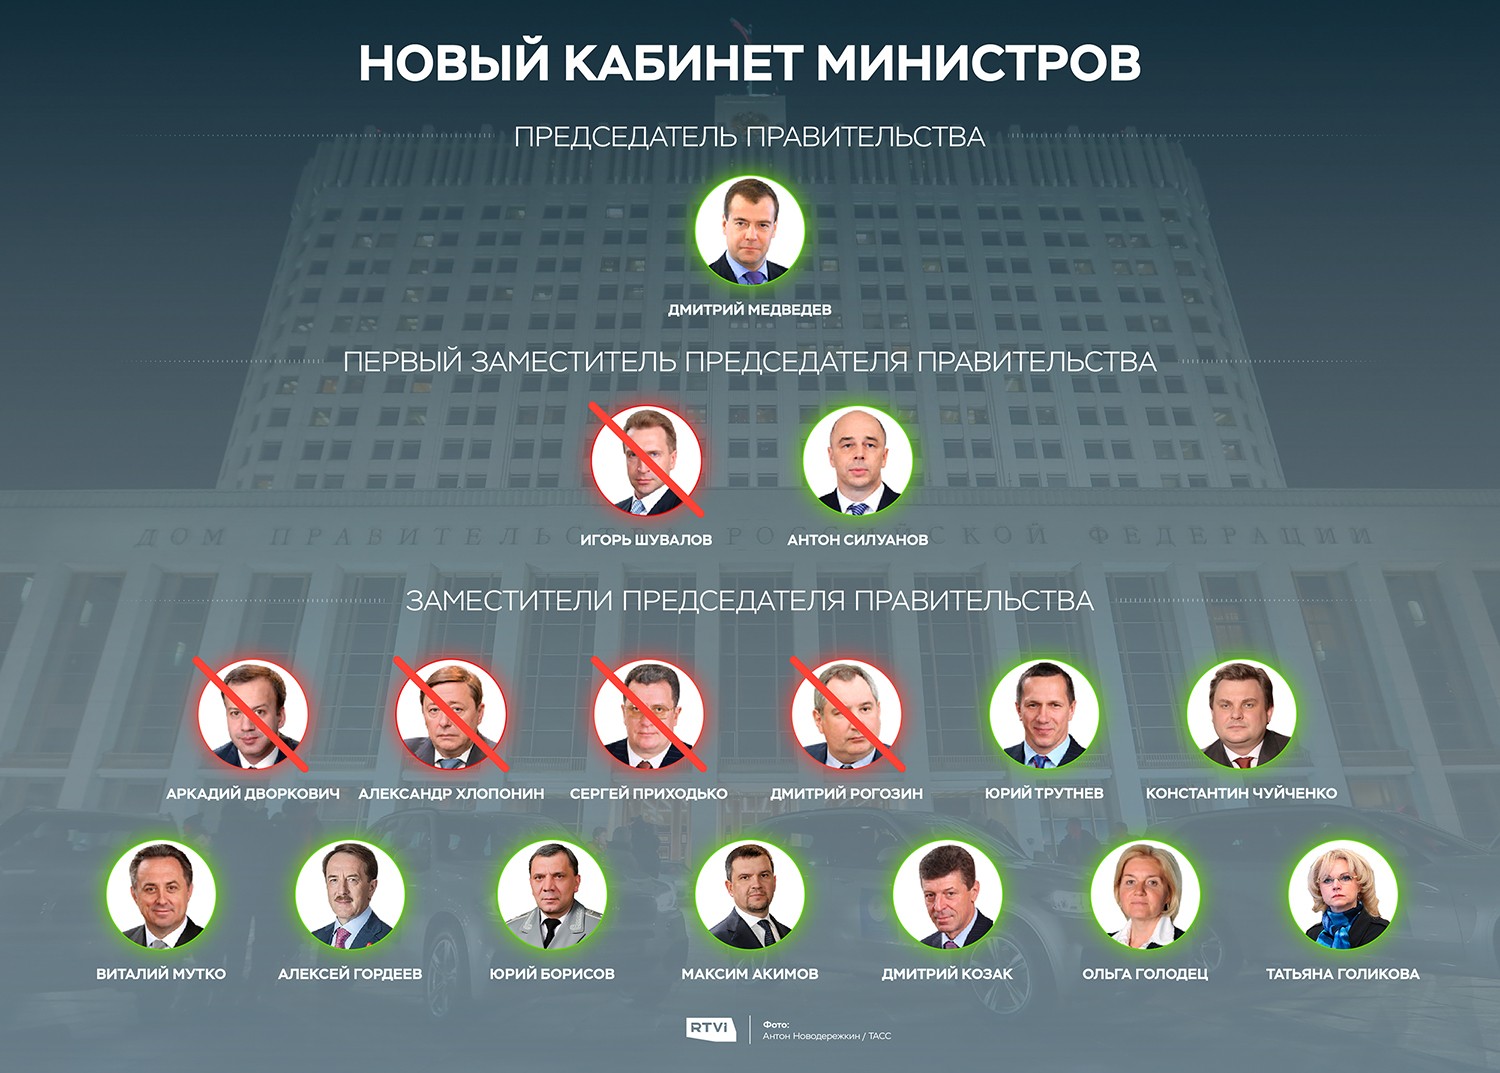 Правительство Медведева состав 2018